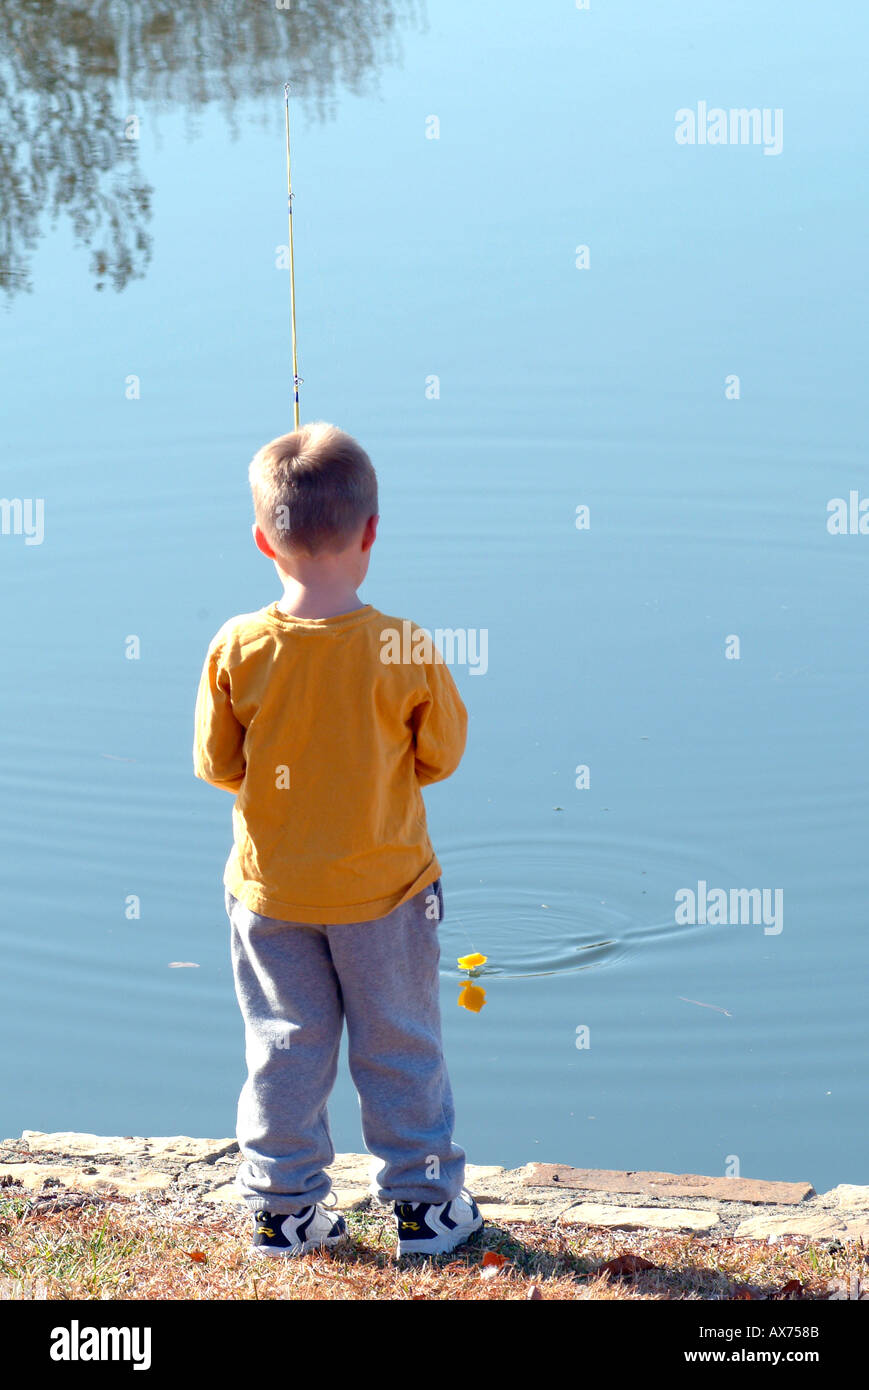 https://c8.alamy.com/comp/AX758B/young-boy-fishing-AX758B.jpg